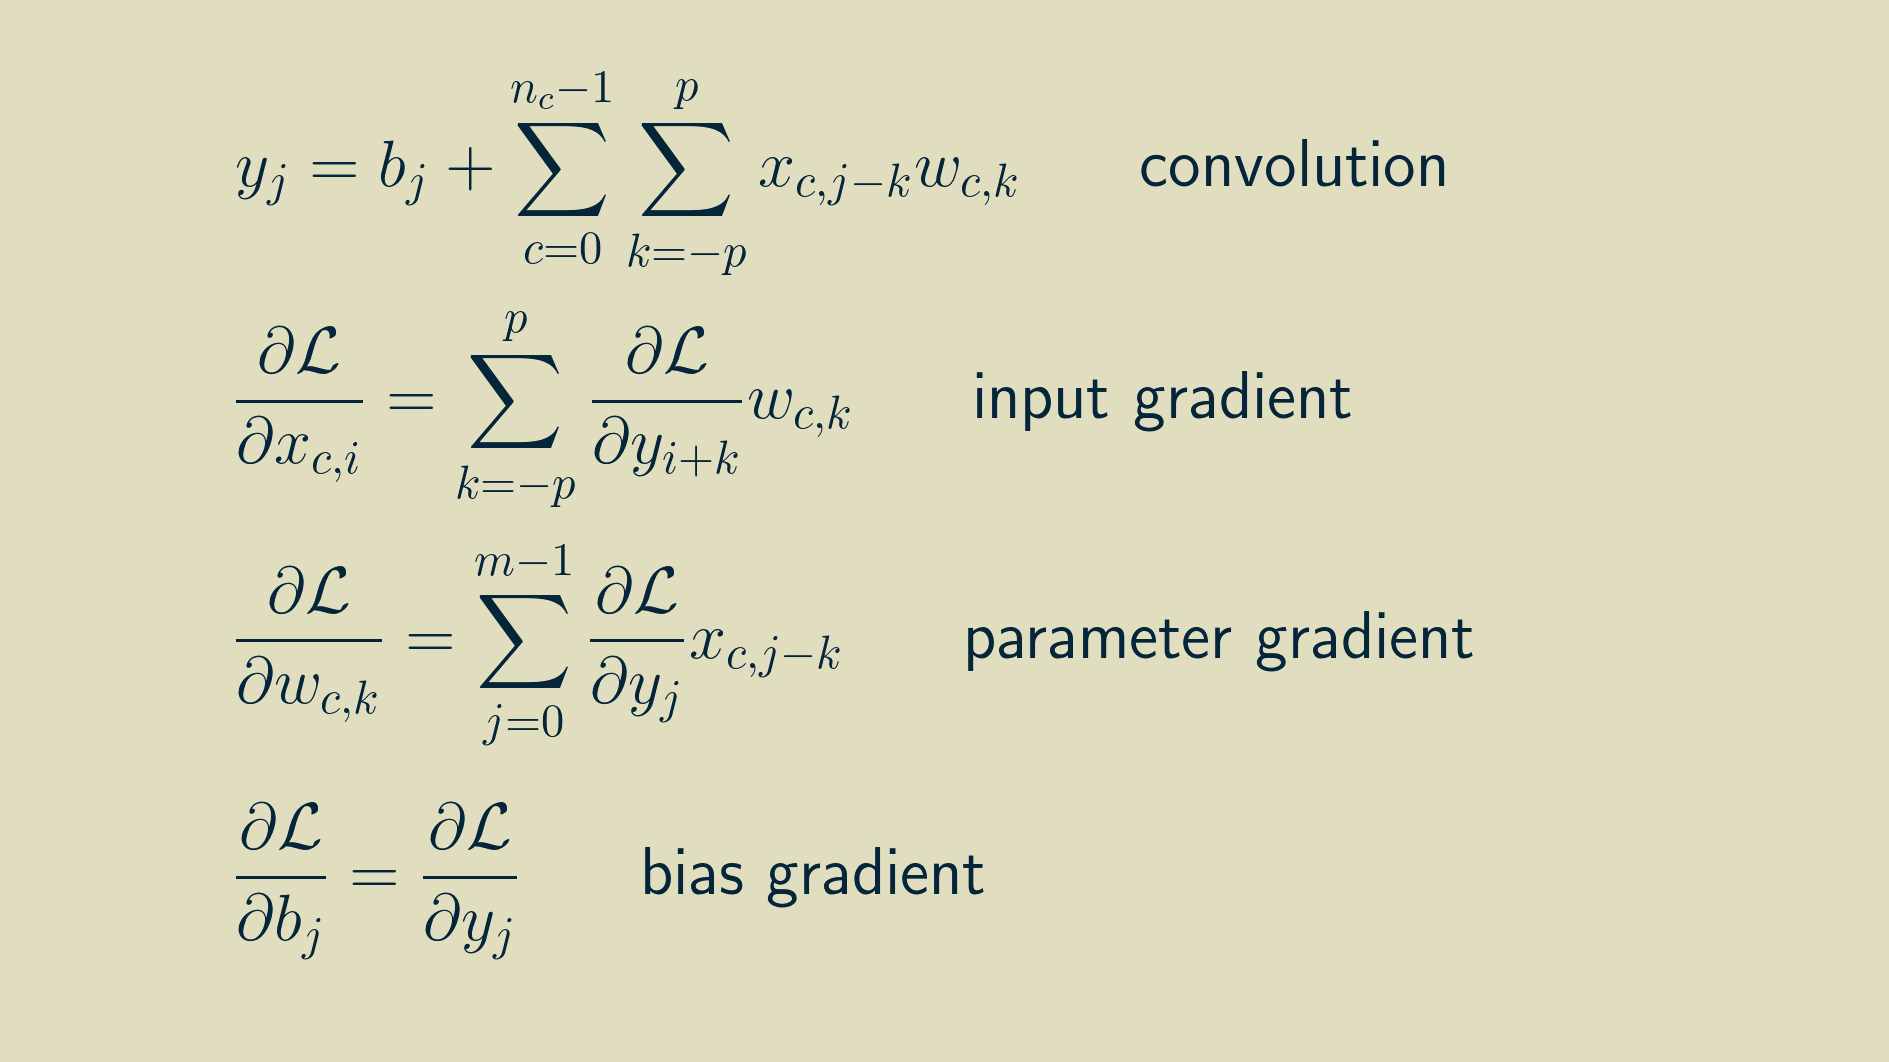 Convolution equations with bias